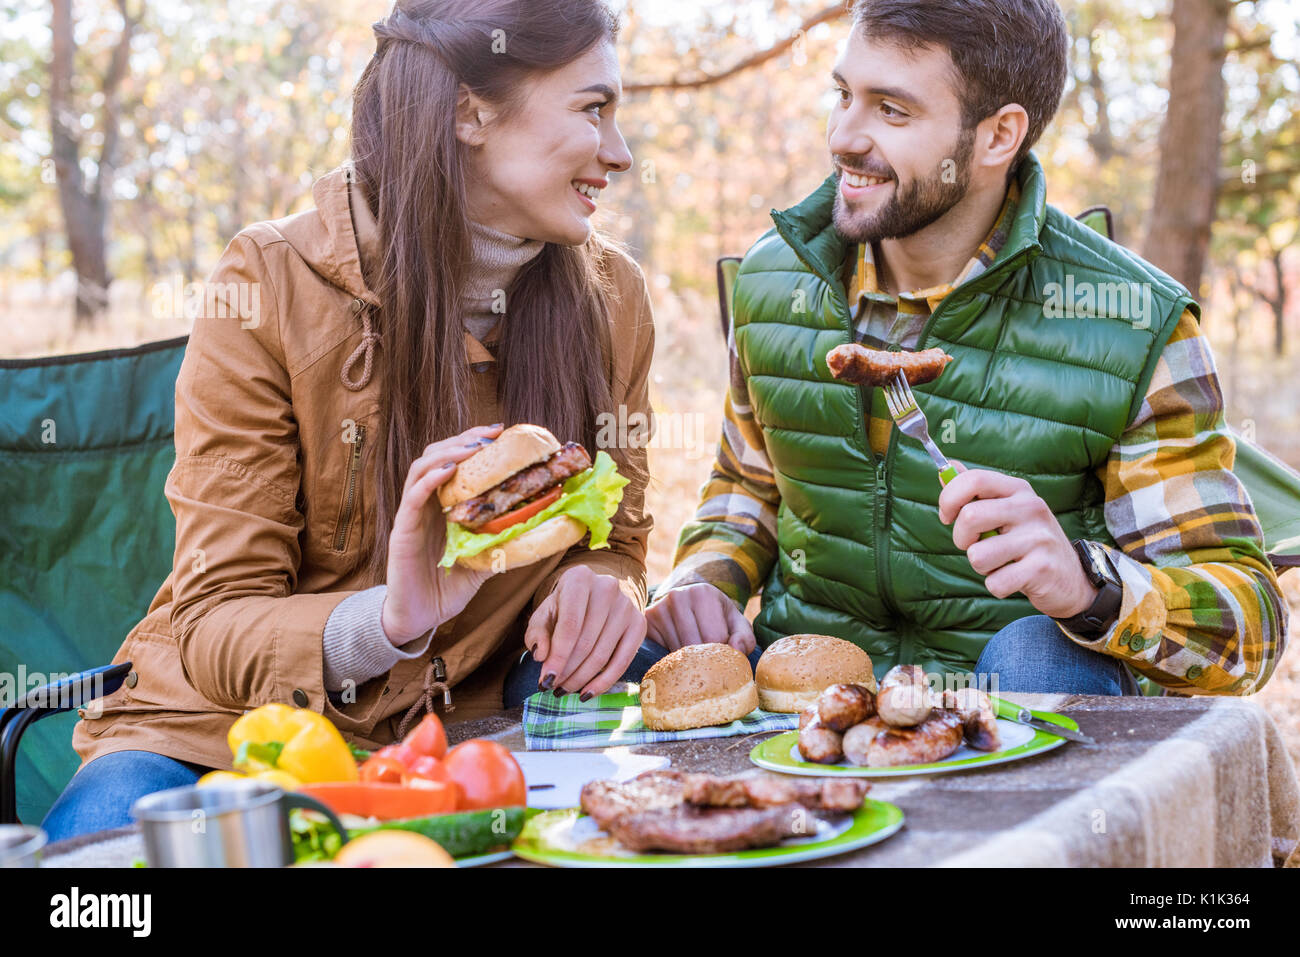 Close-up ritratto di sorridenti coppia giovane seduto a tavola e mangiare il picnic nella foresta di autunno Foto Stock